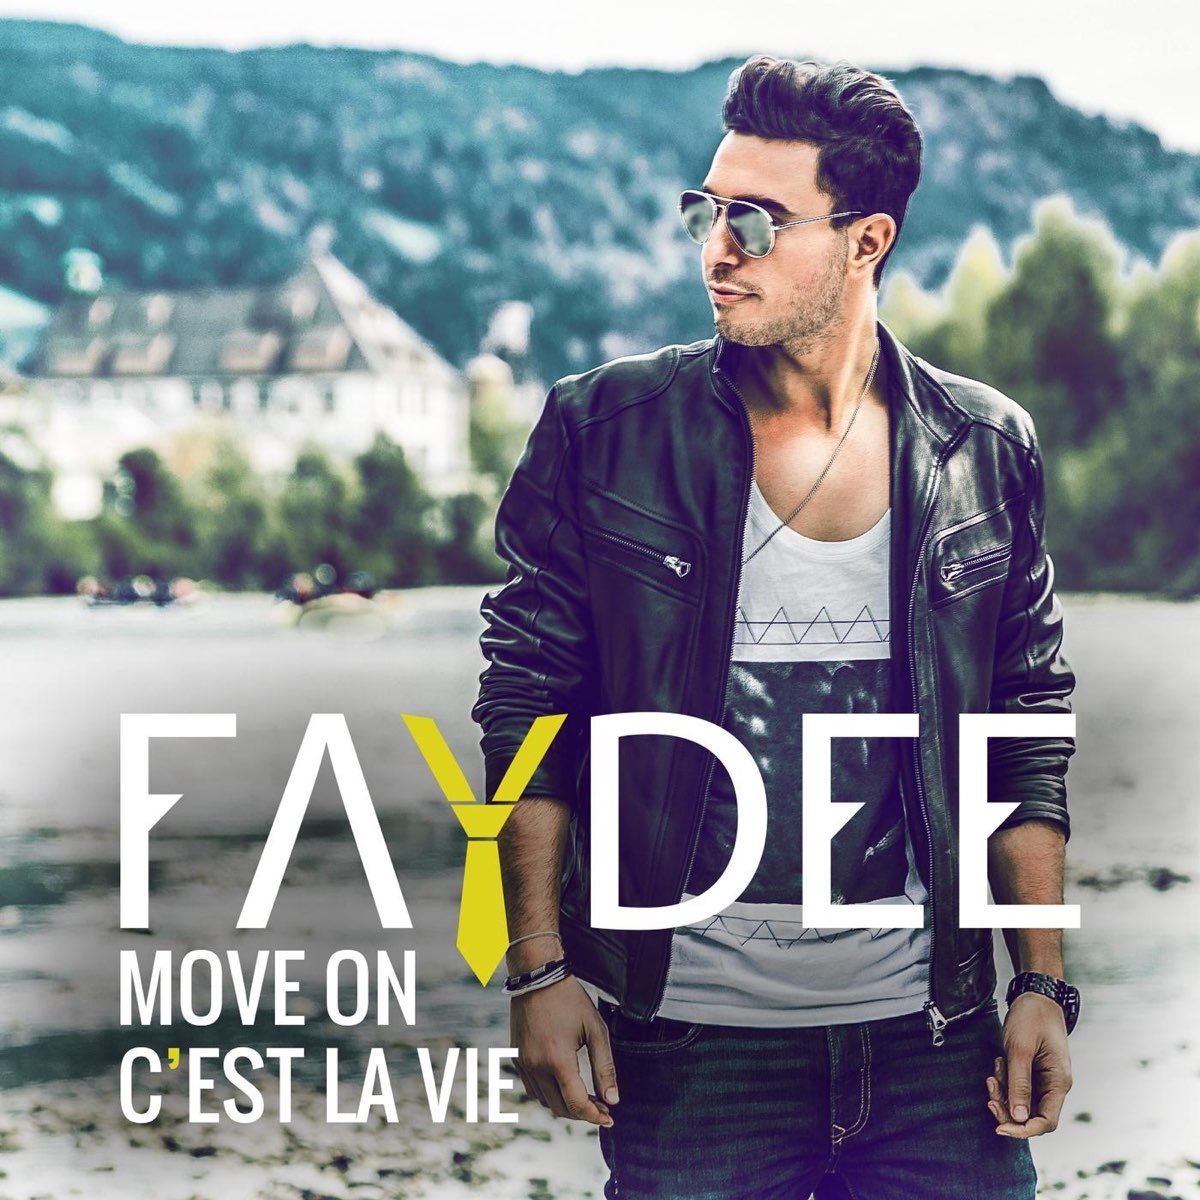 Move On (C'est la vie) - Single by Faydee on Apple Music